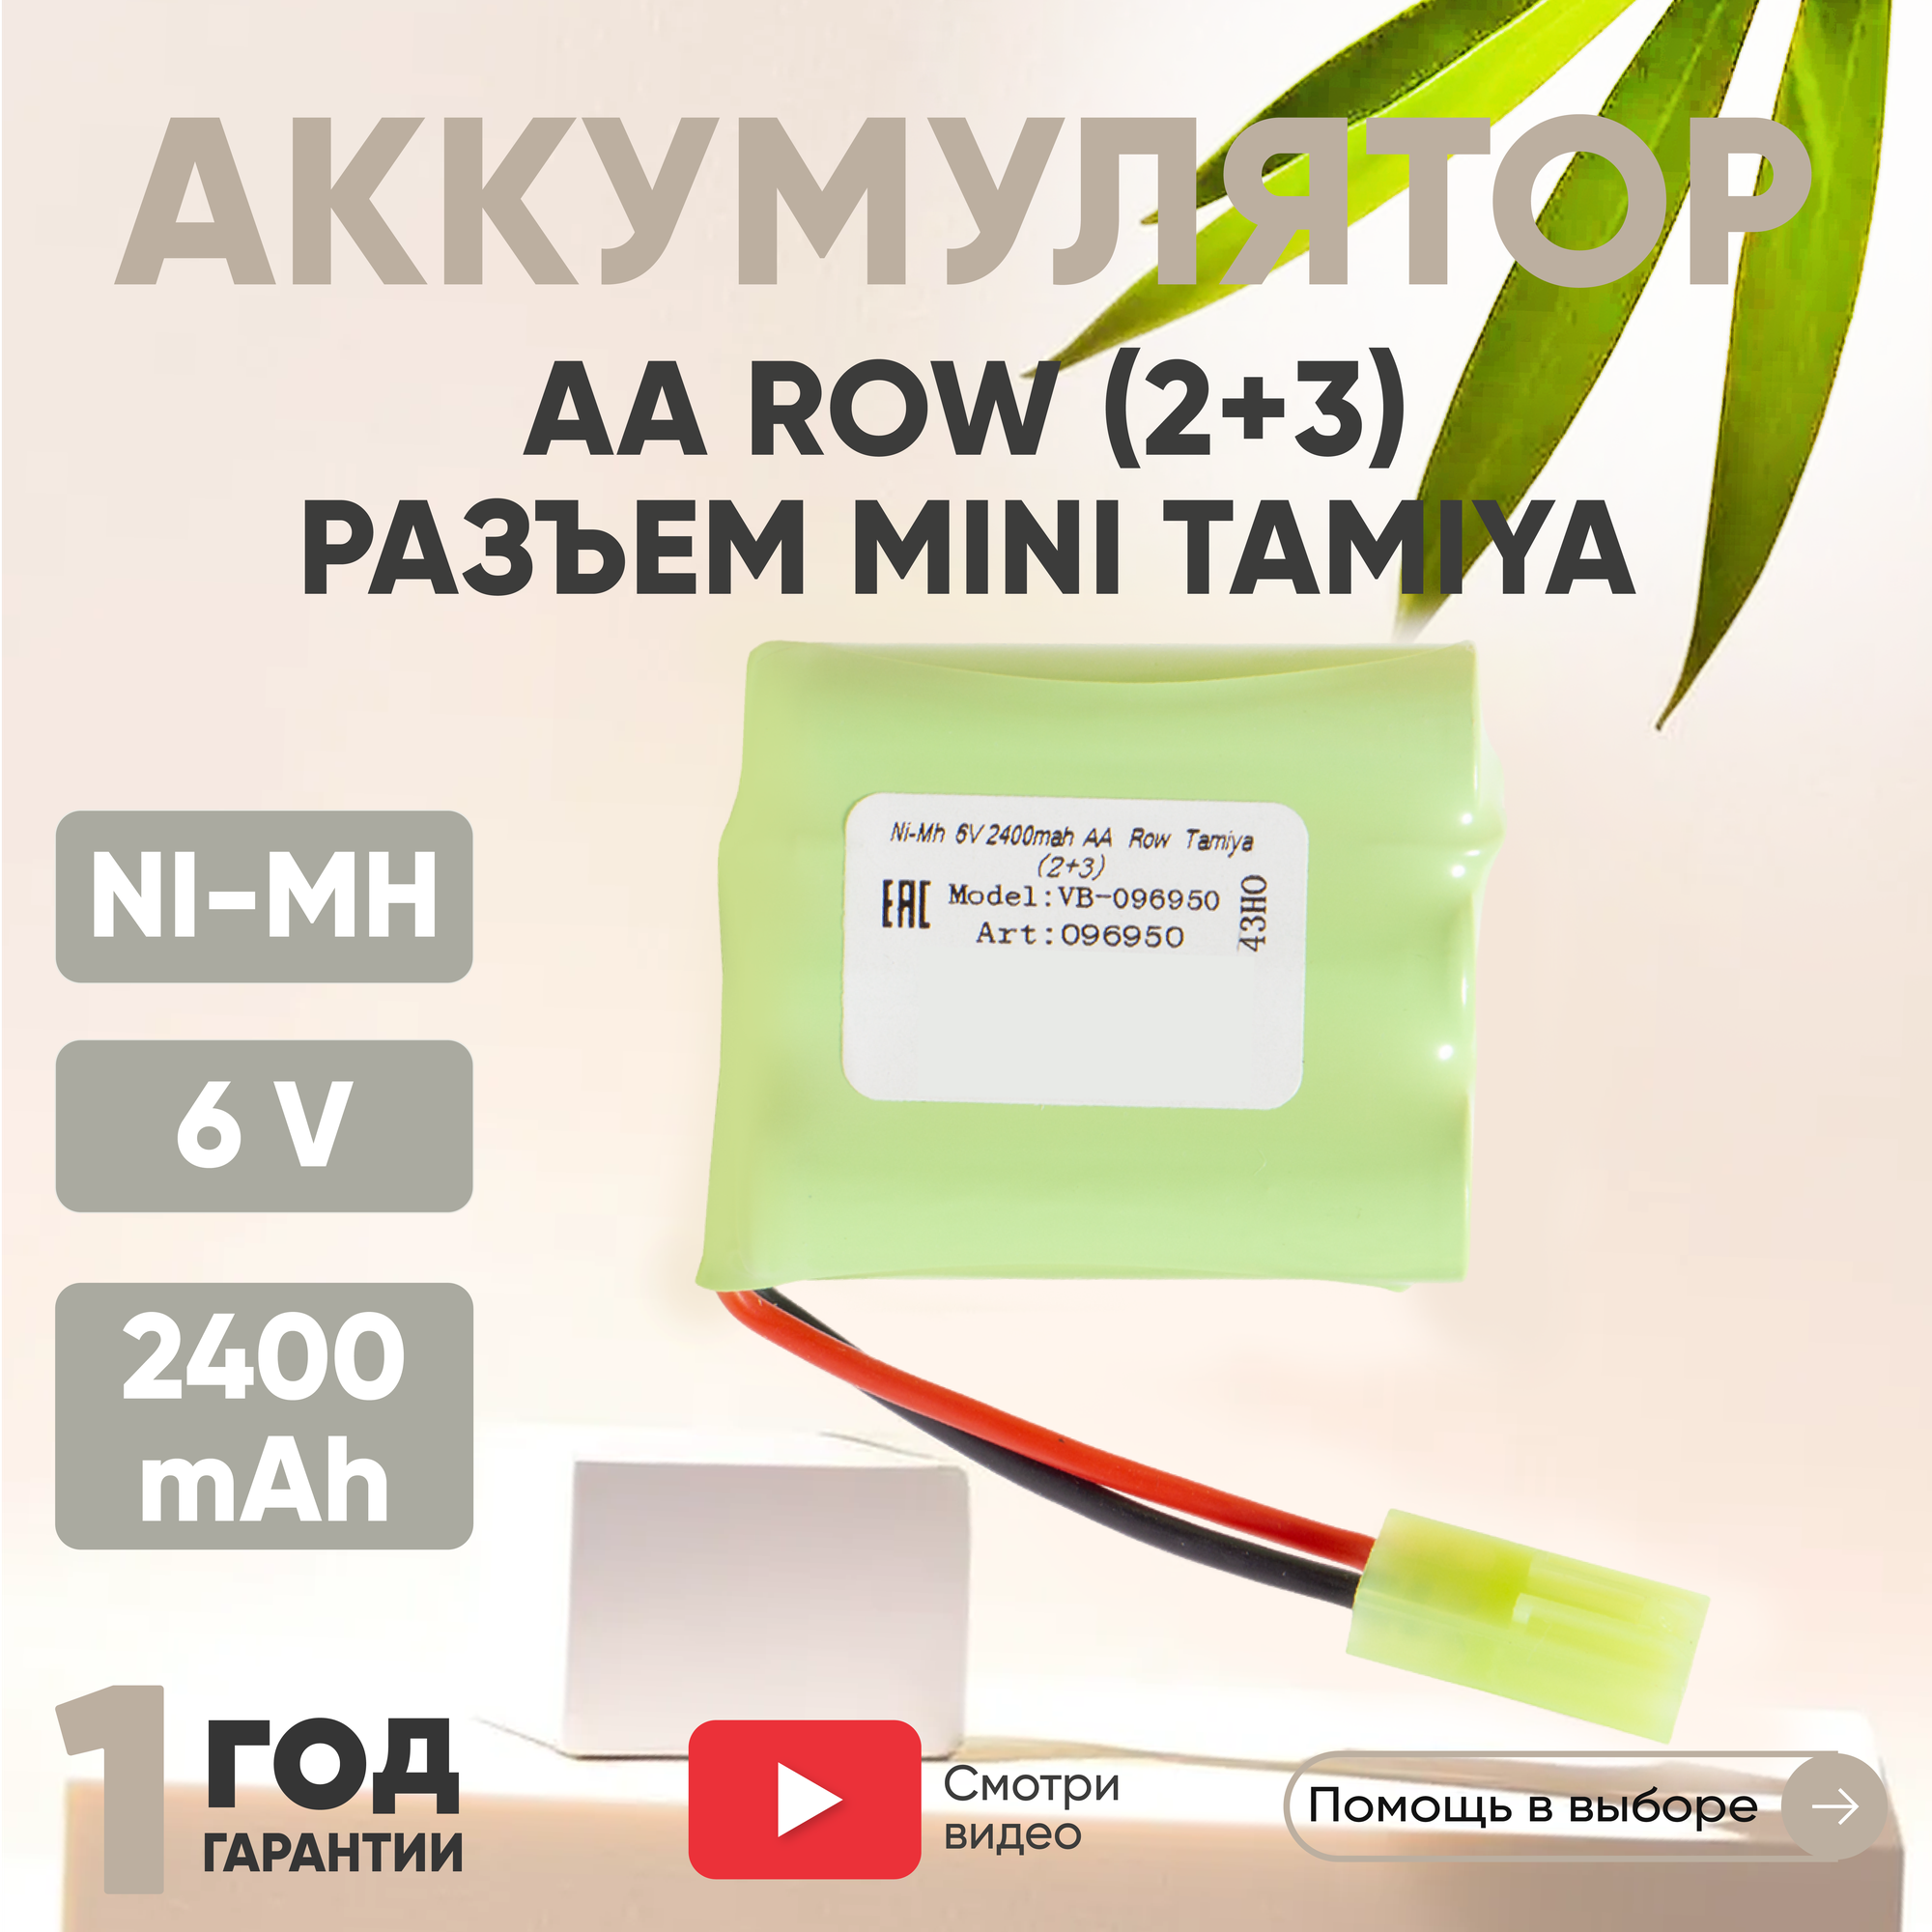 Аккумулятор (батарея) AA Row разъем Tamiya (2+3) 2400мАч 6В Ni-Mh